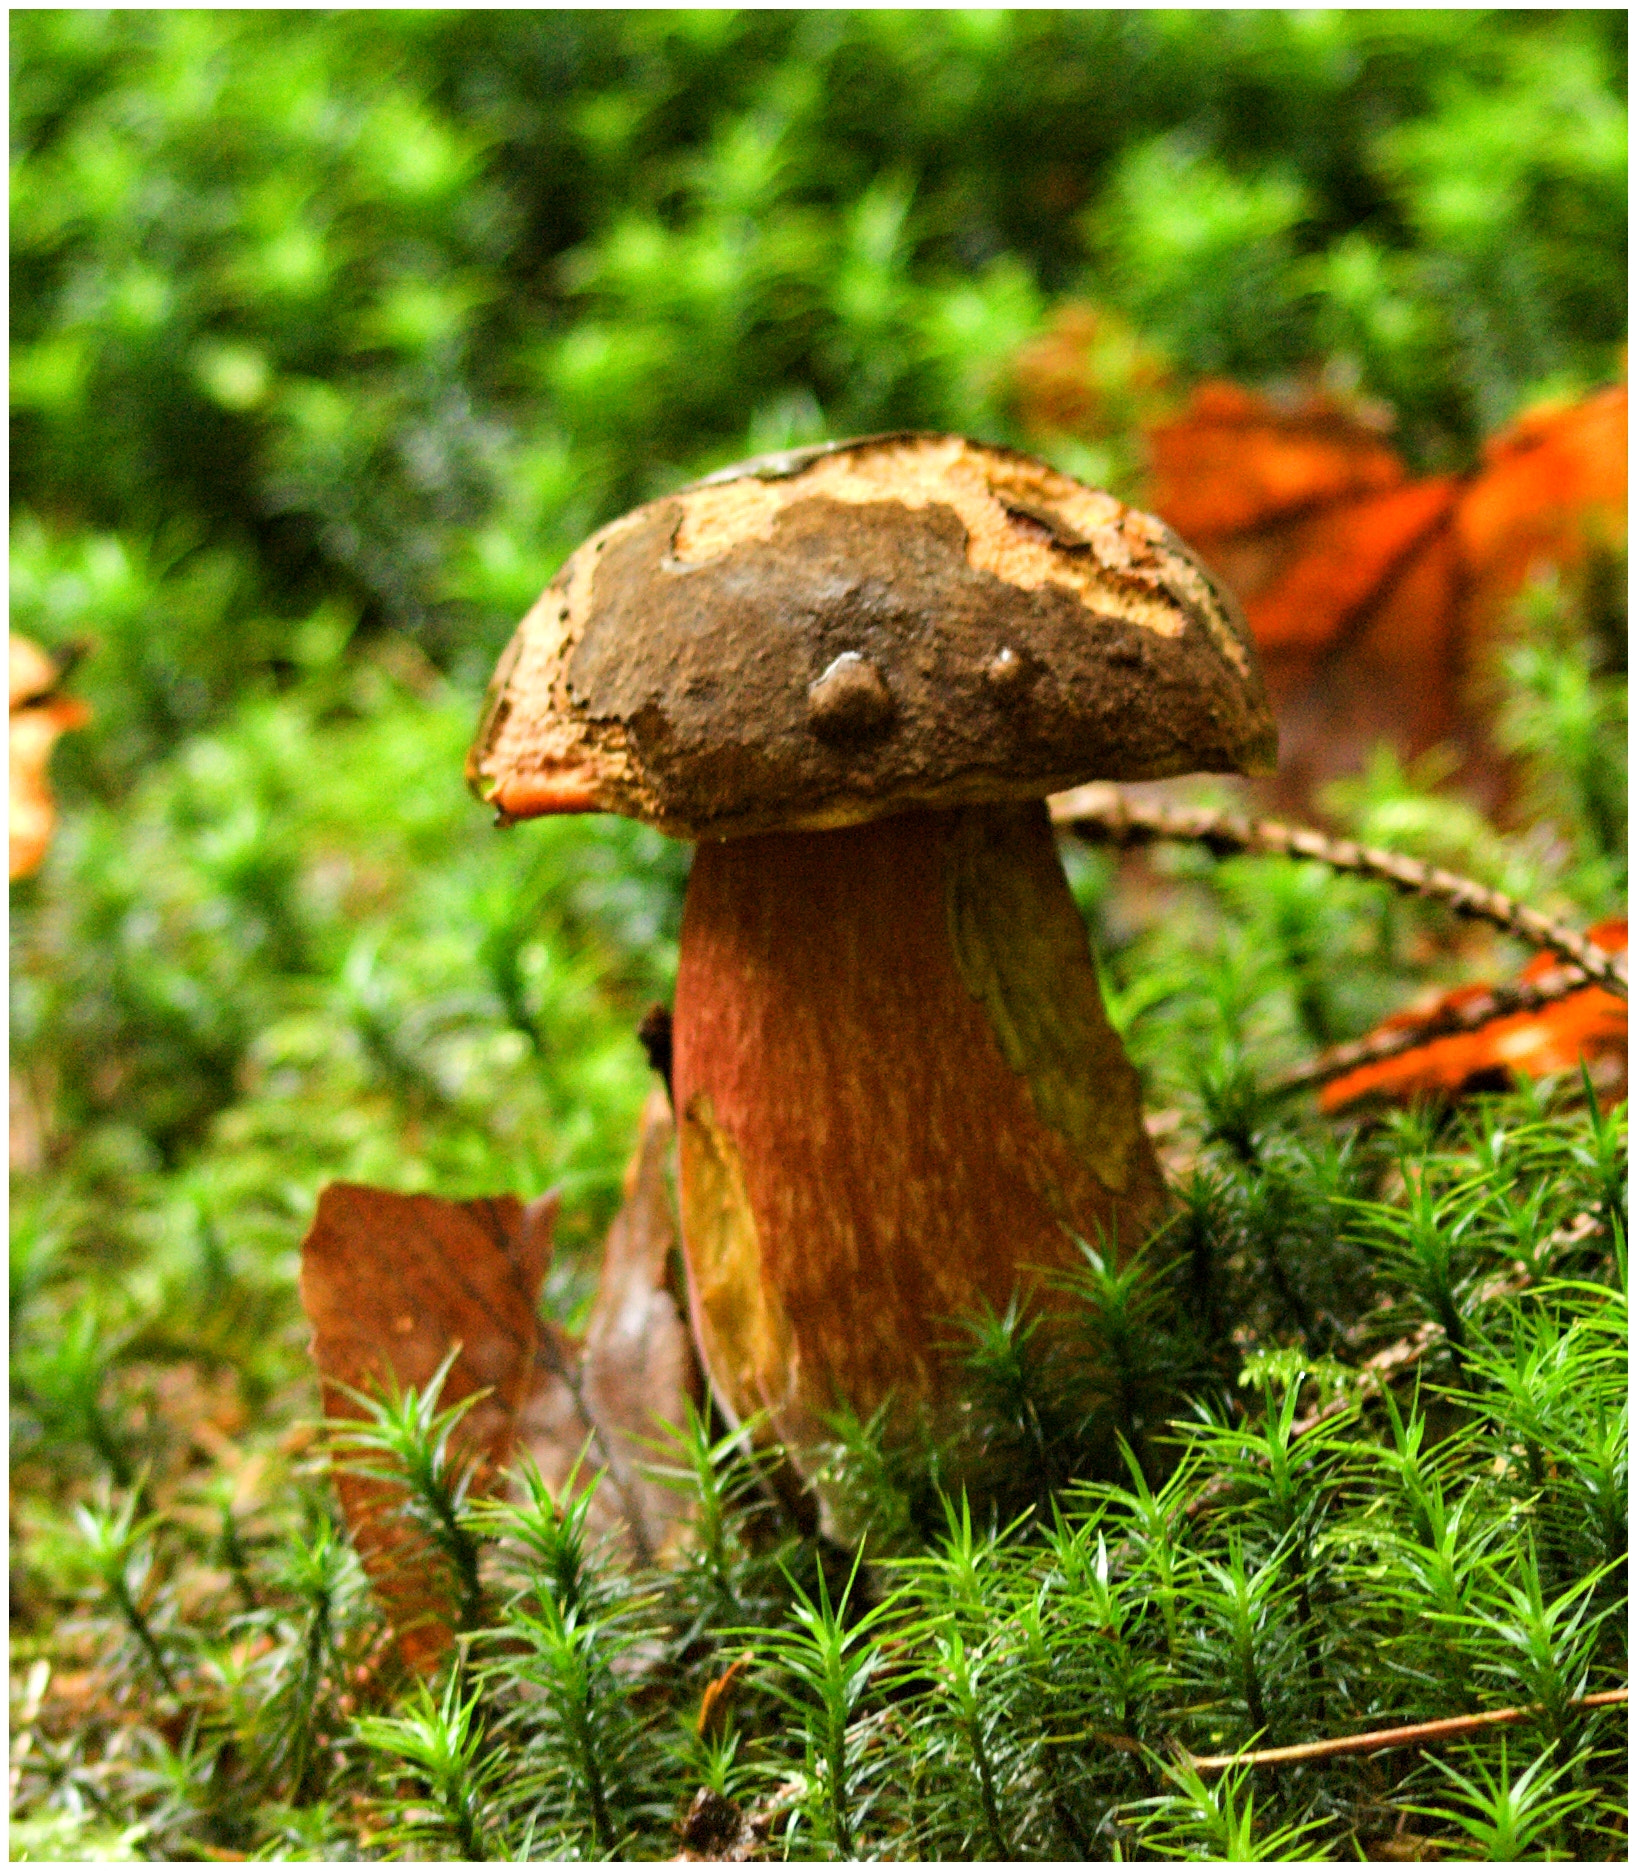 Olympus E-510 (EVOLT E-510) + 70.00 - 300.00 mm f/4.0 - 5.6 sample photo. The mushroom ... photography